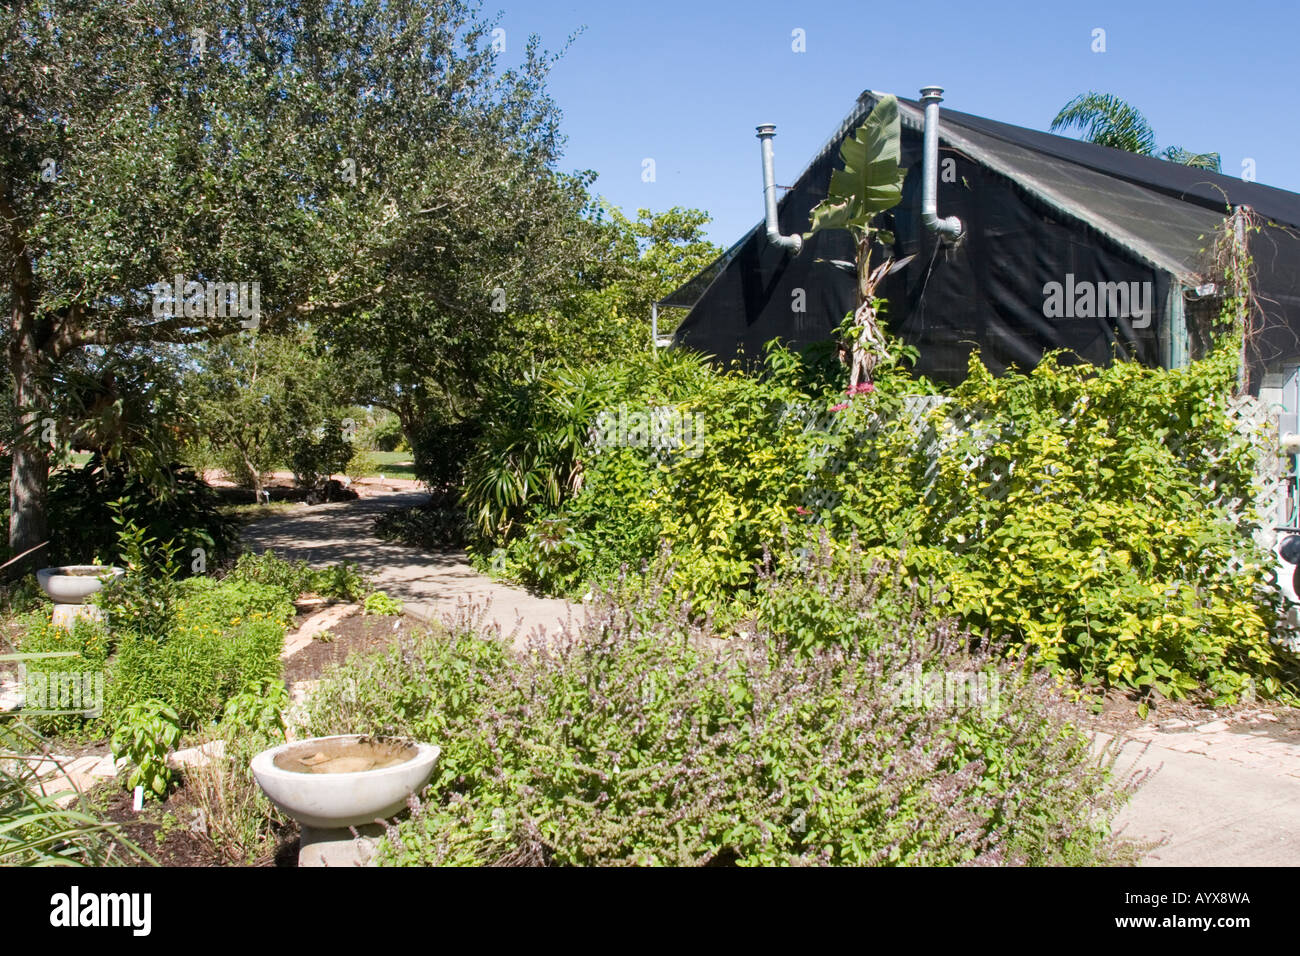 Corpus Christi Botanical Gardens Nature Center Has Become The